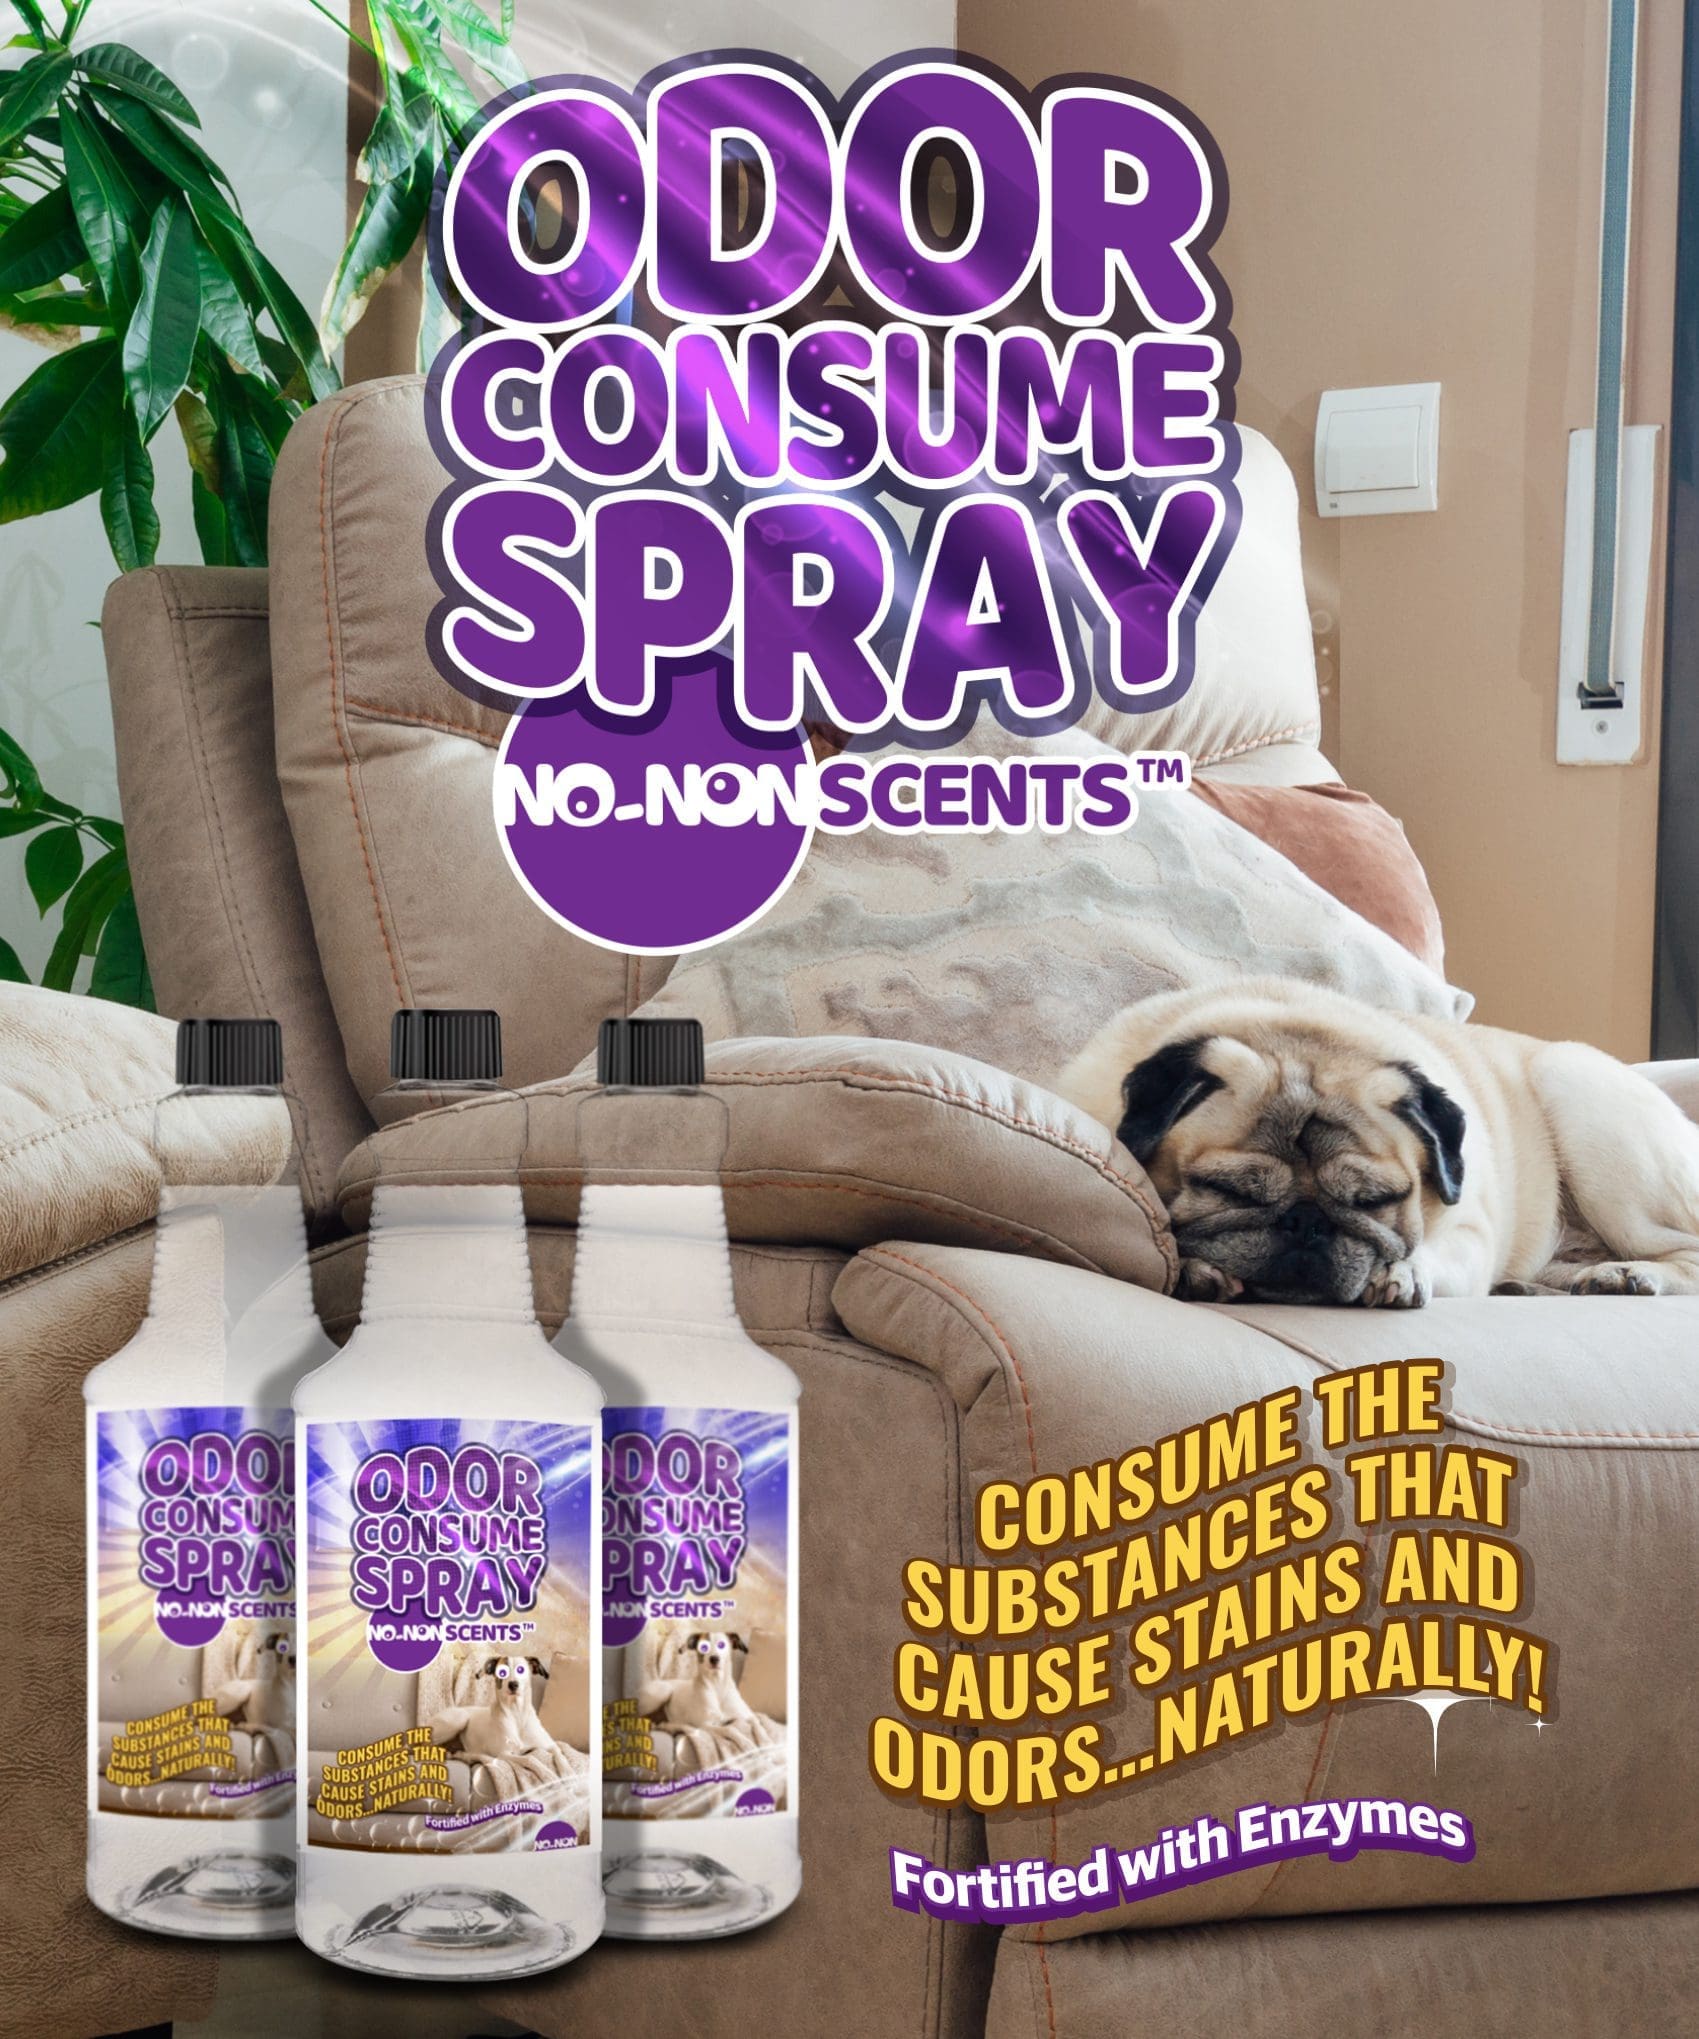 No-NonScents Odor Consume Soft Surface Spray - Quart